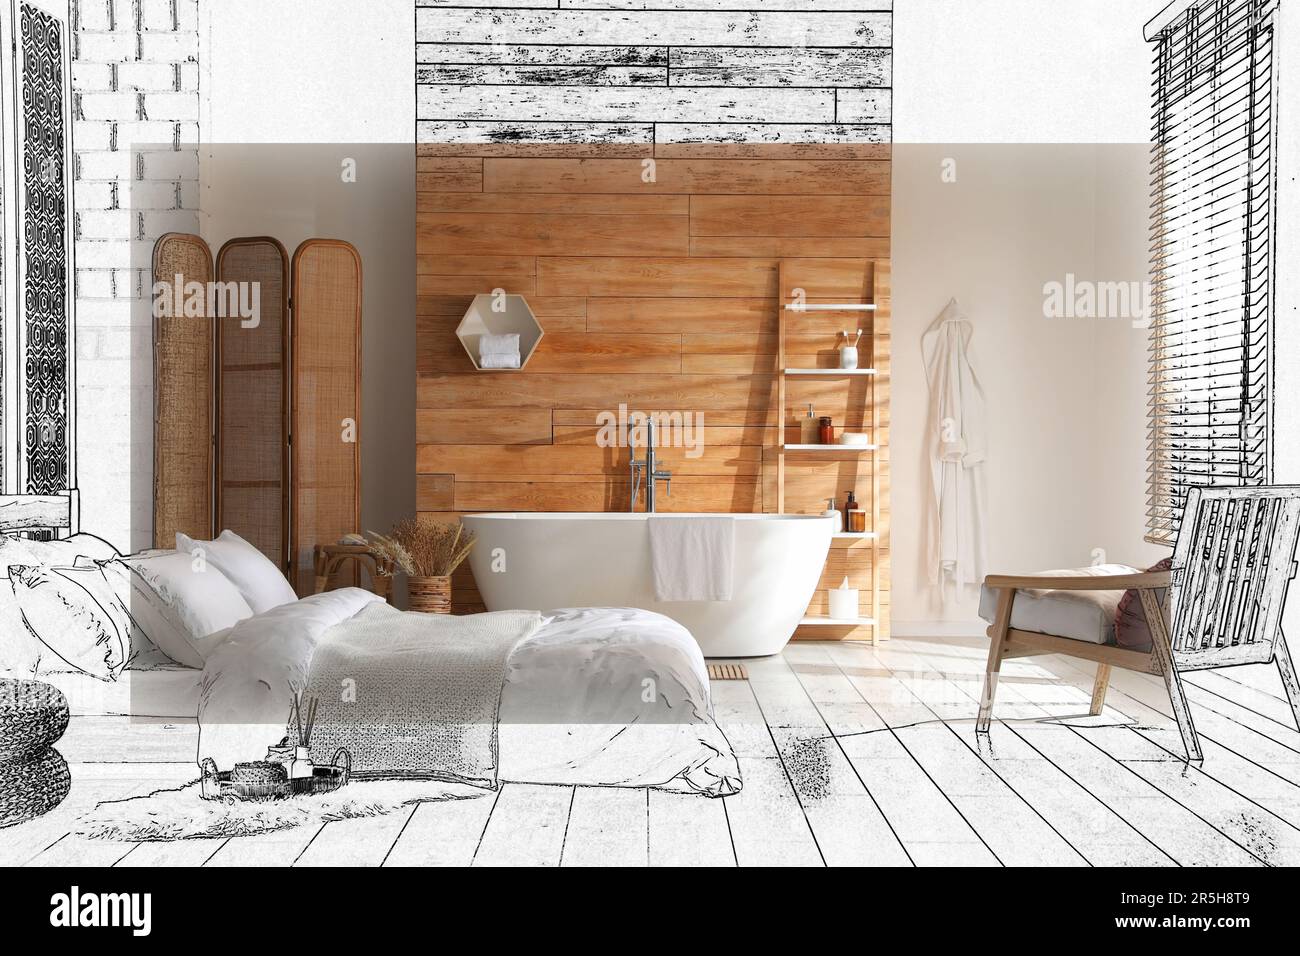 Von der Idee zur Umsetzung. Stilvolle Einrichtung des Apartments mit kombiniertem Bad und Schlafbereich. Collage aus Foto und Skizze Stockfoto